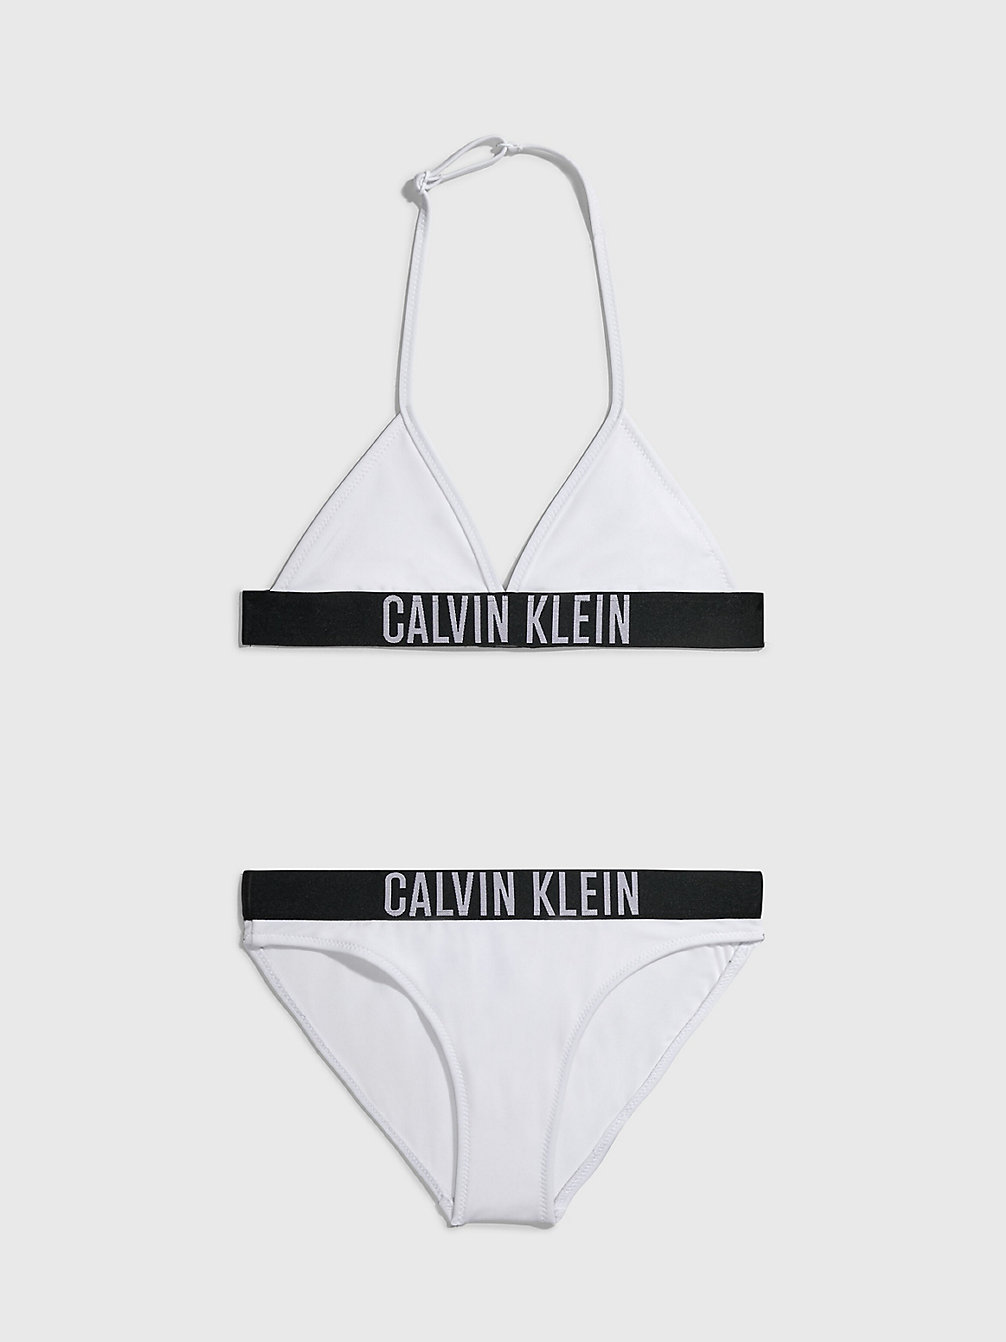 PVH CLASSIC WHITE > Triangelbikini Voor Meisjes - Intense Power > undefined meisjes - Calvin Klein